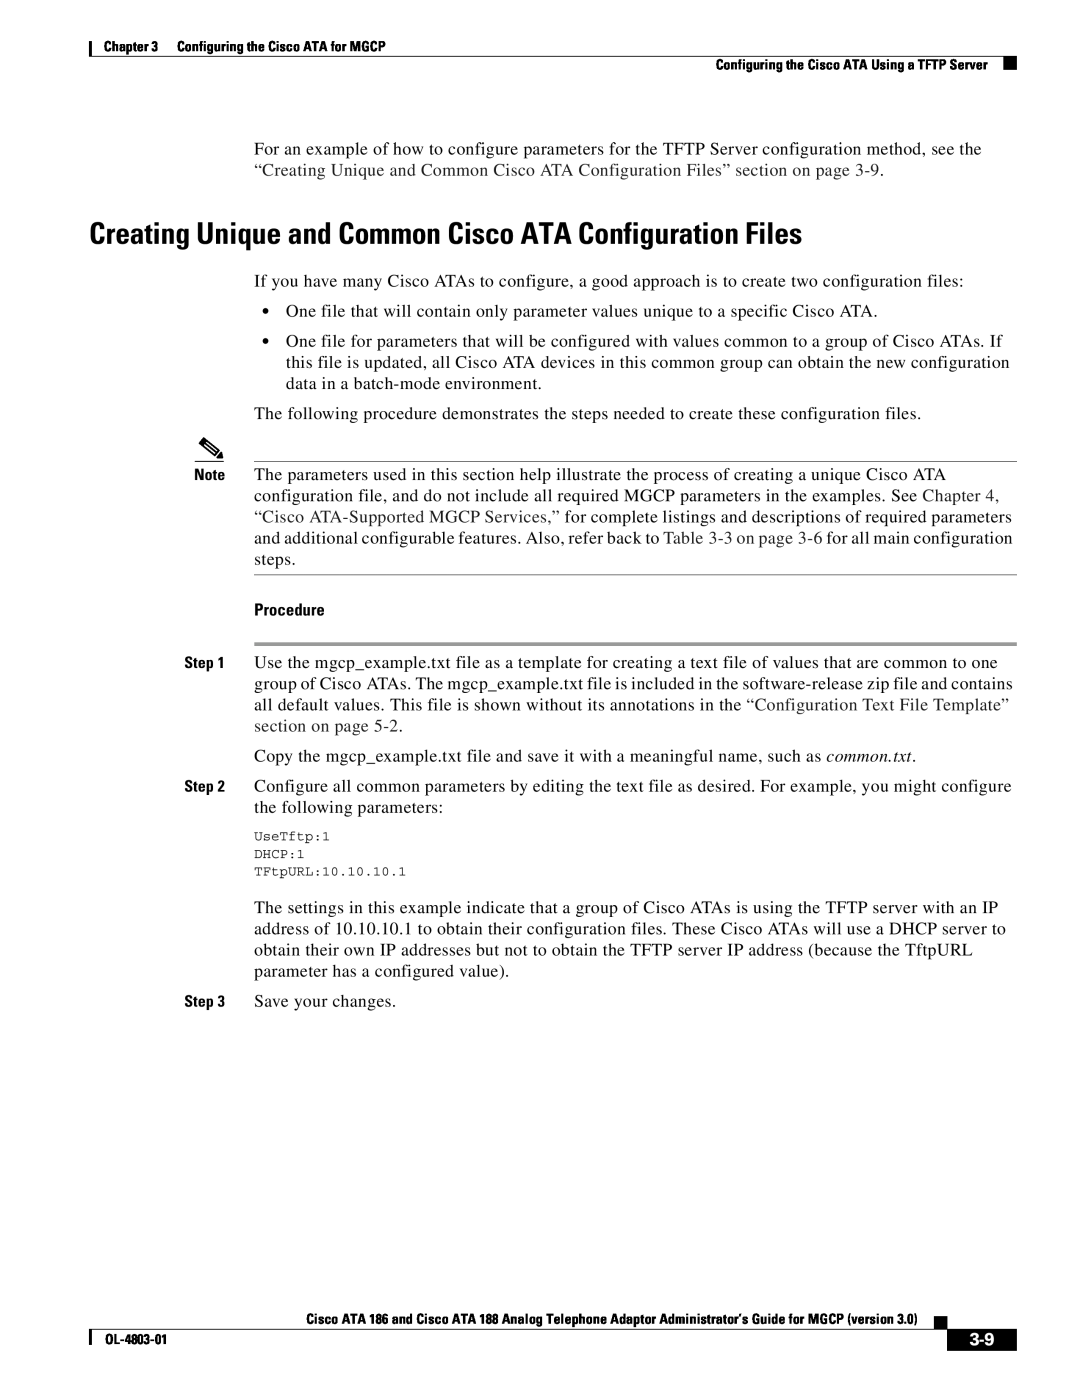 Cisco Systems ATA 188, ATA 186 manual Creating Unique and Common Cisco ATA Configuration Files, Procedure 